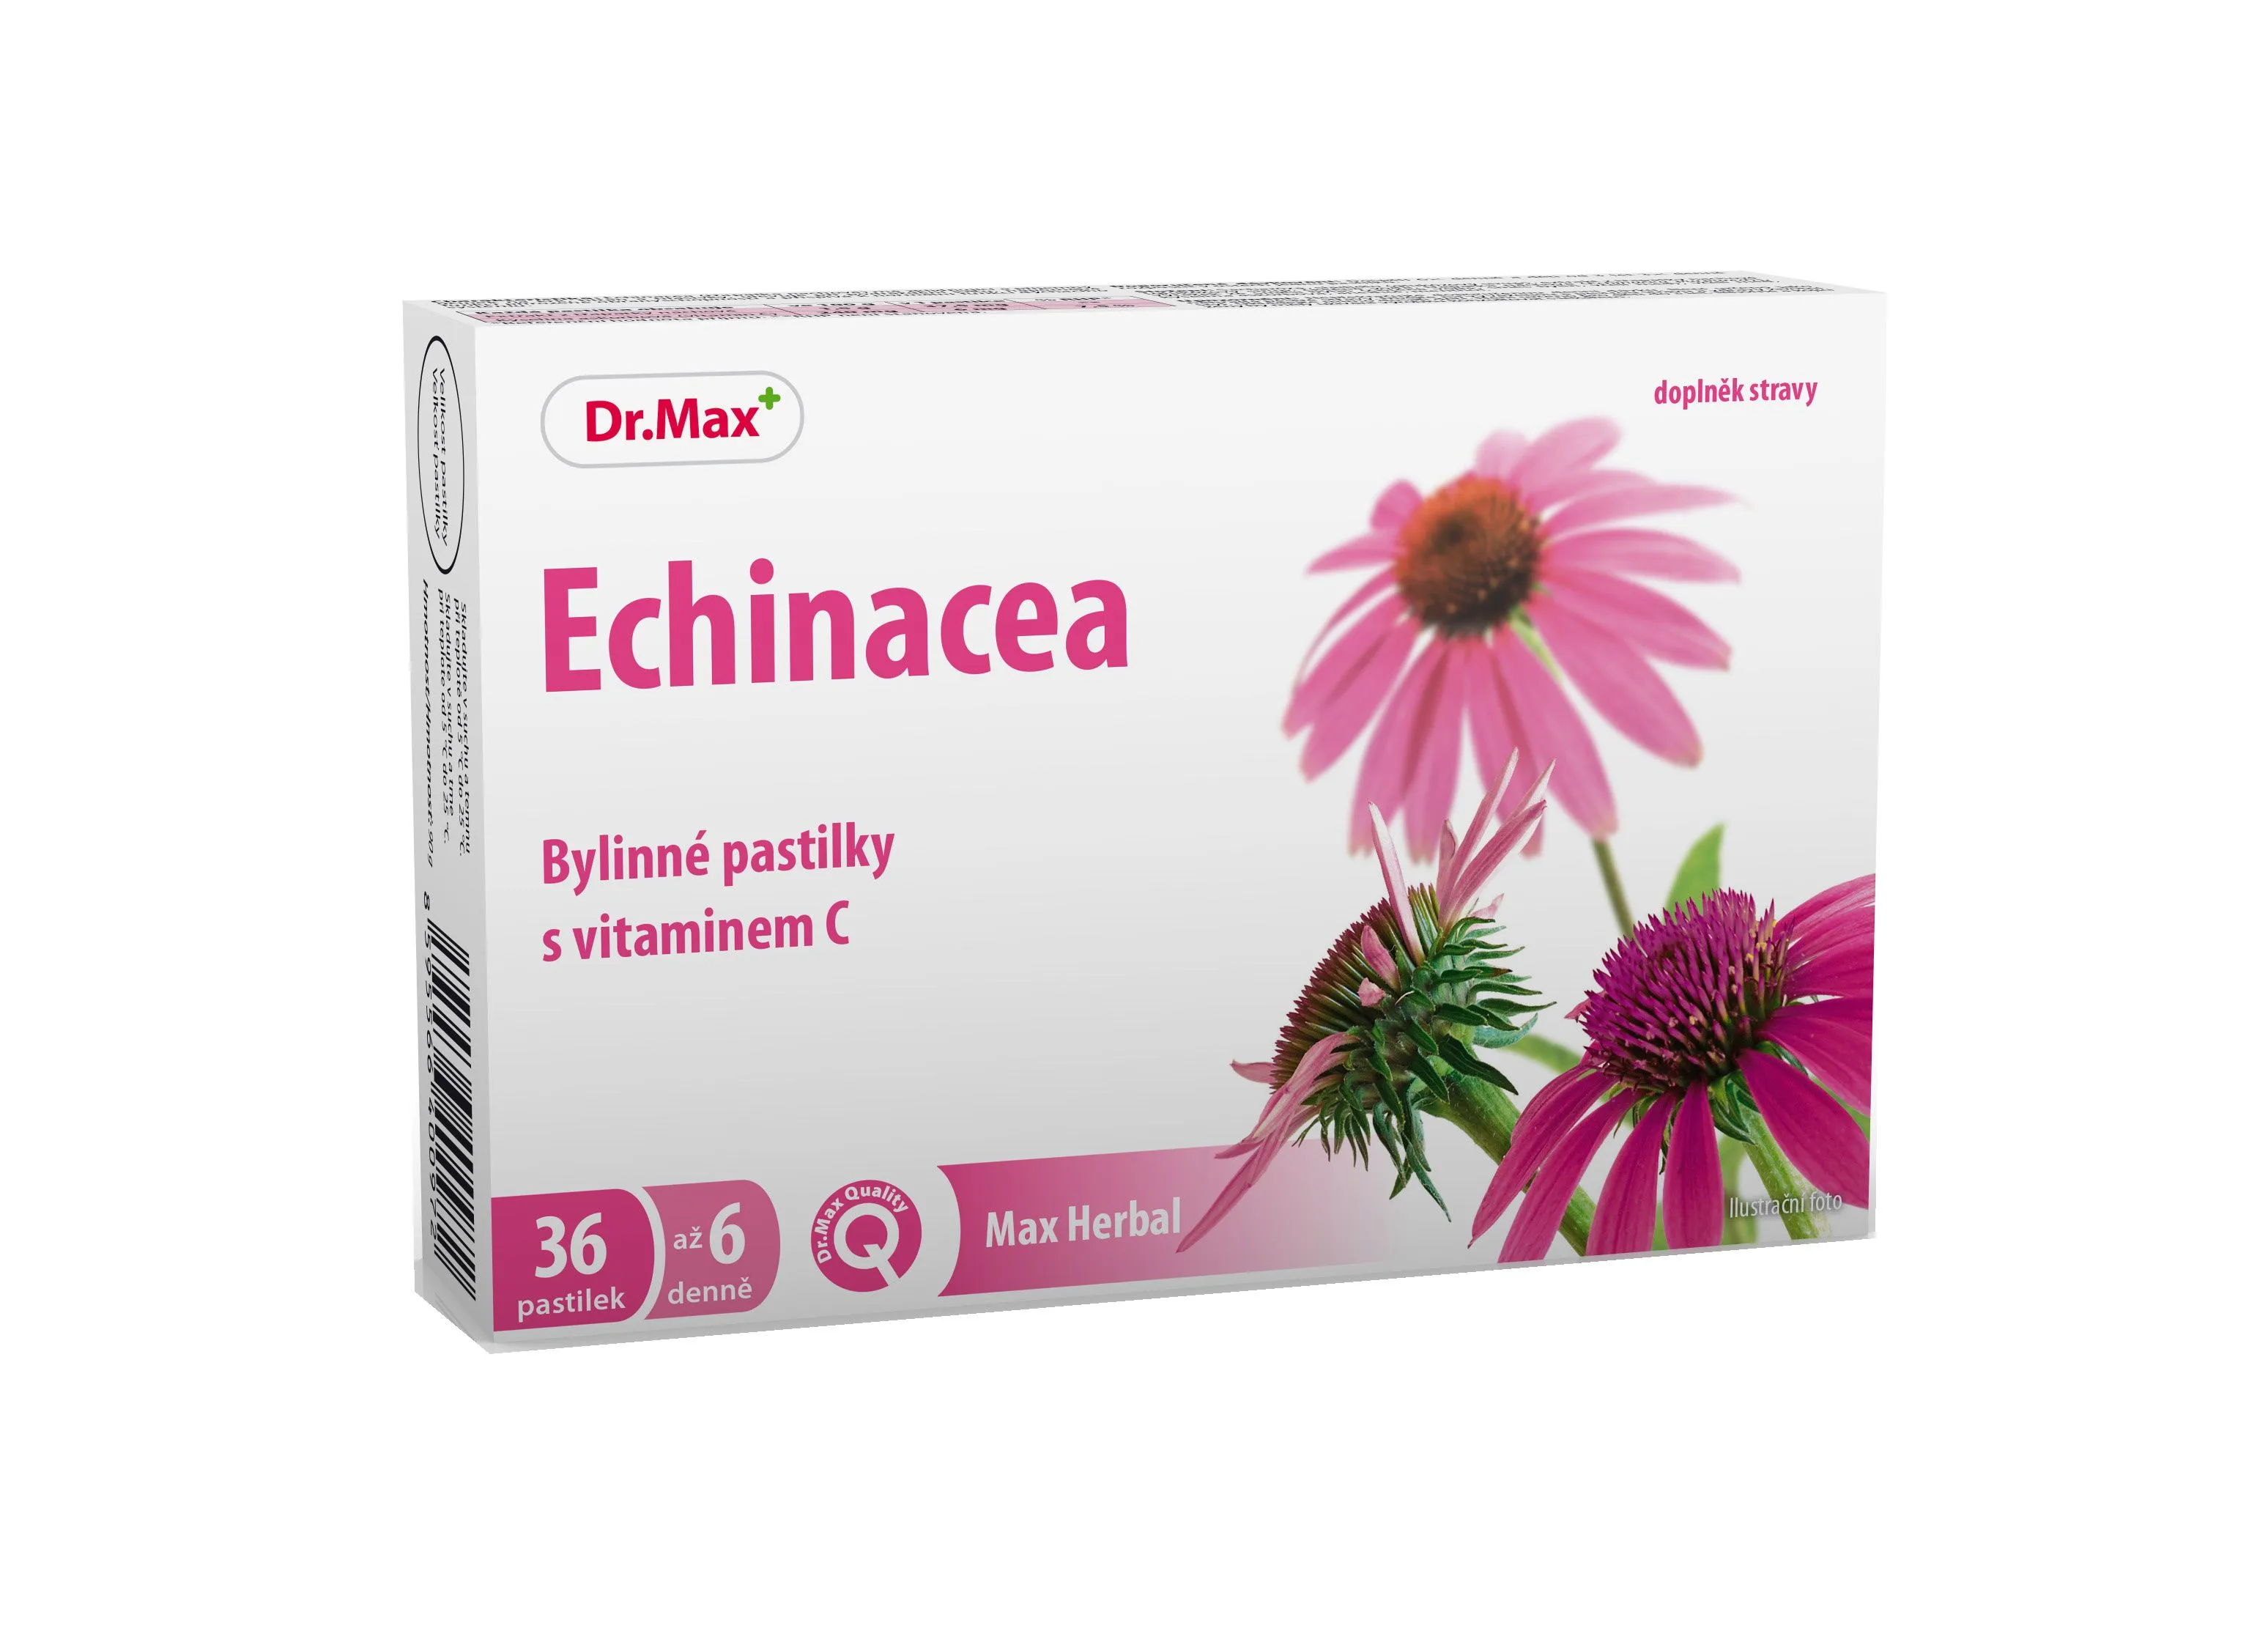 Dr. Max Herbal Echinacea bylinné pastilky 36 pastilek